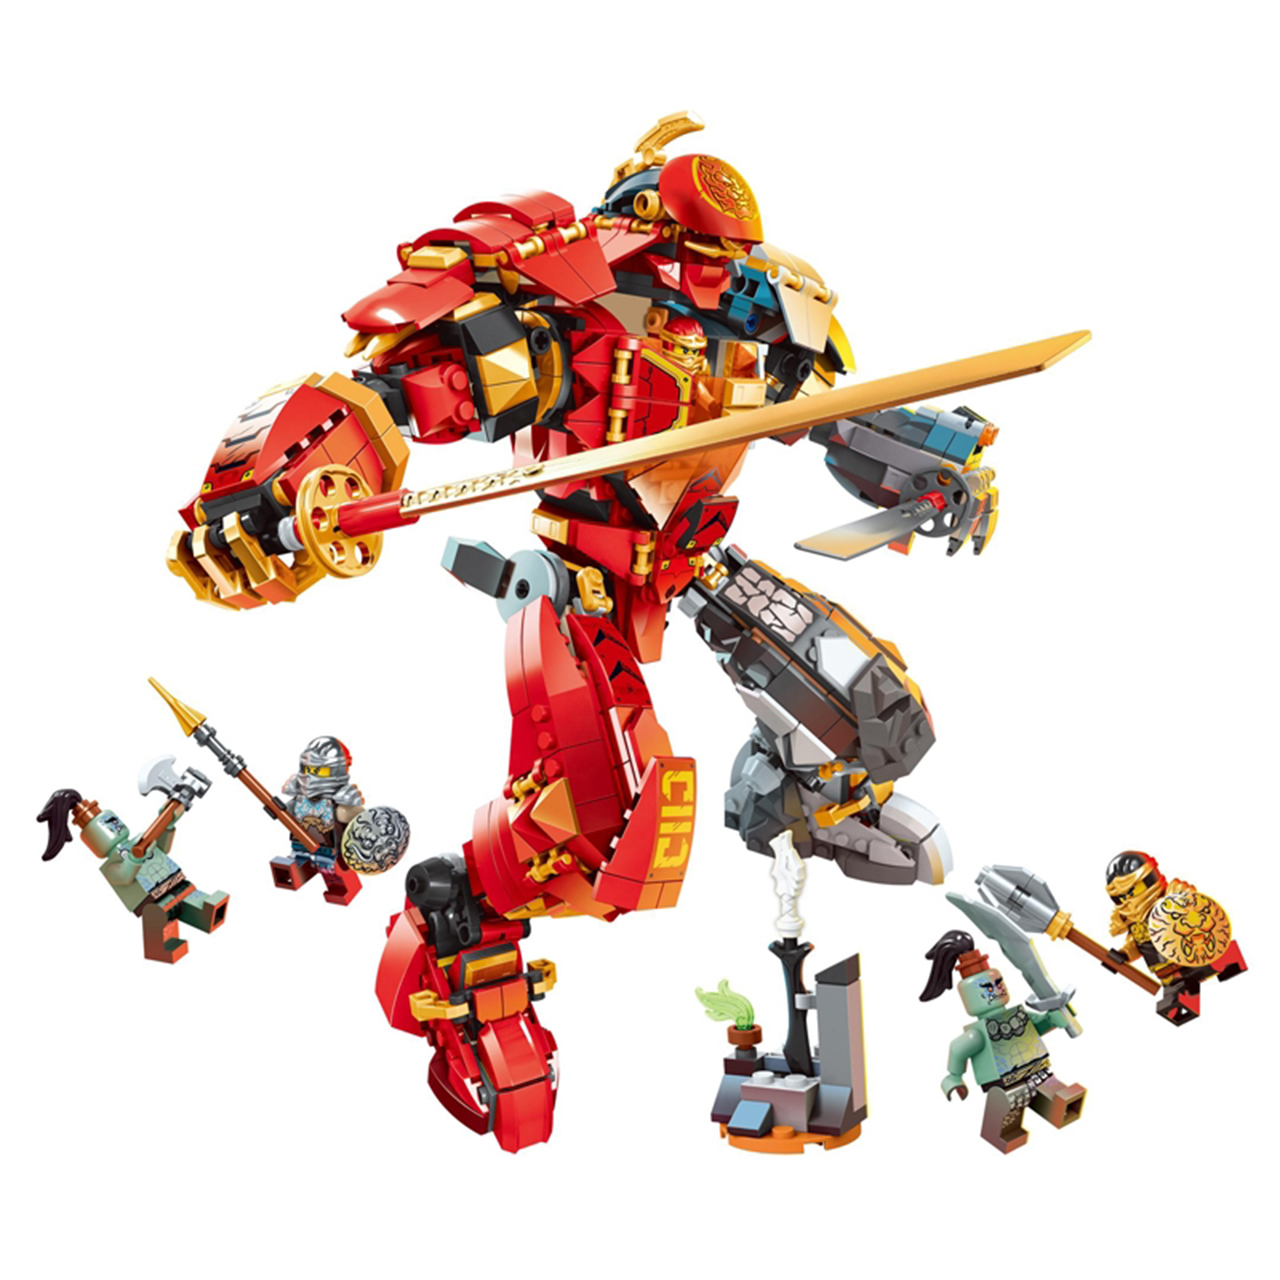 Đồ chơi LEGO NINJAGO Chiến Giáp Hợp Thể Của Kai & Cole 1033 miếng ghép - 4026